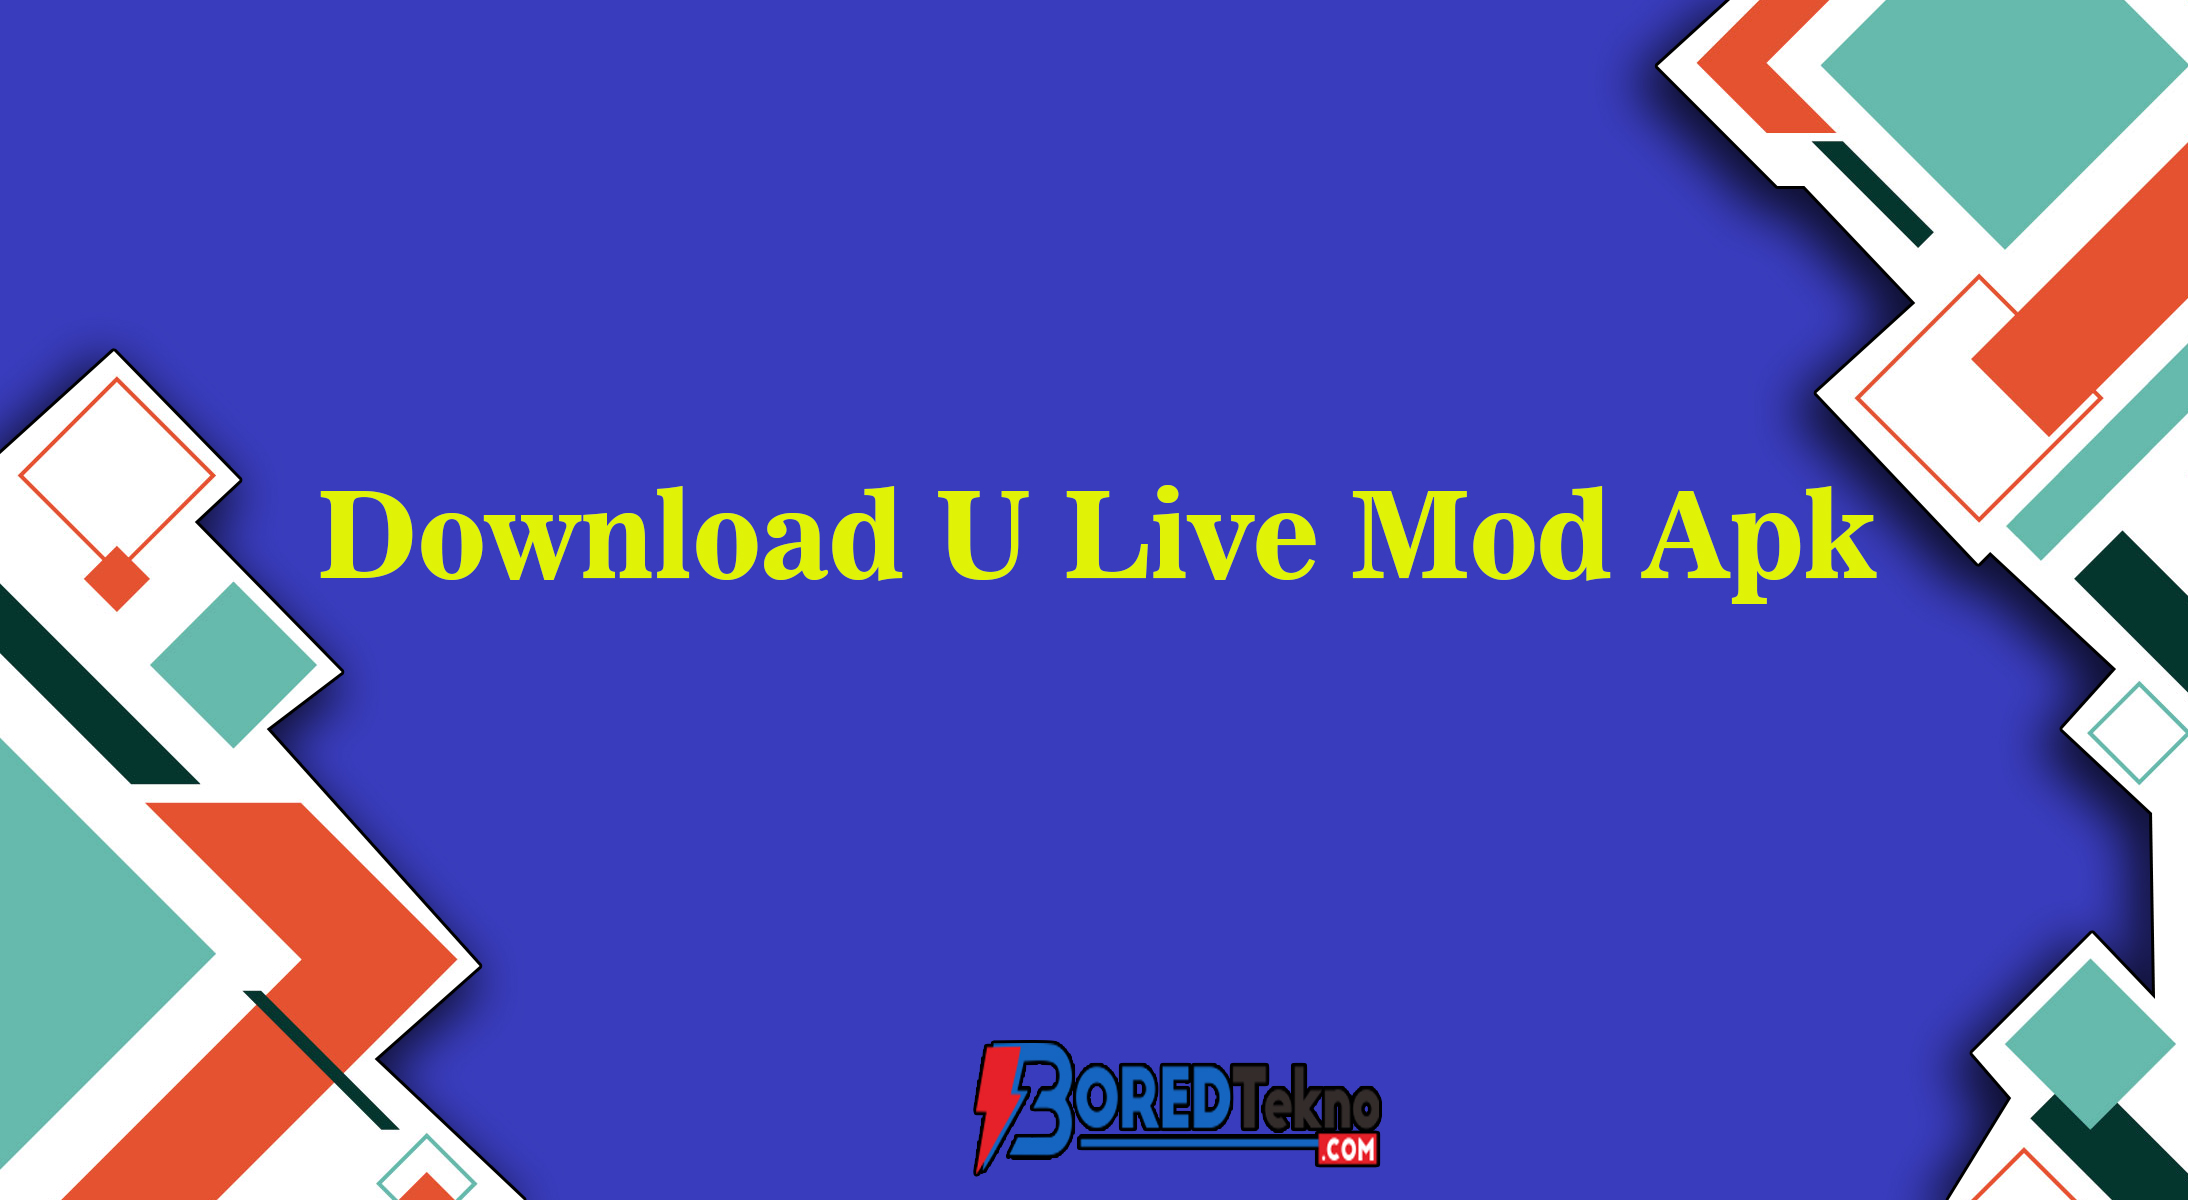 Download U Live Mod Apk